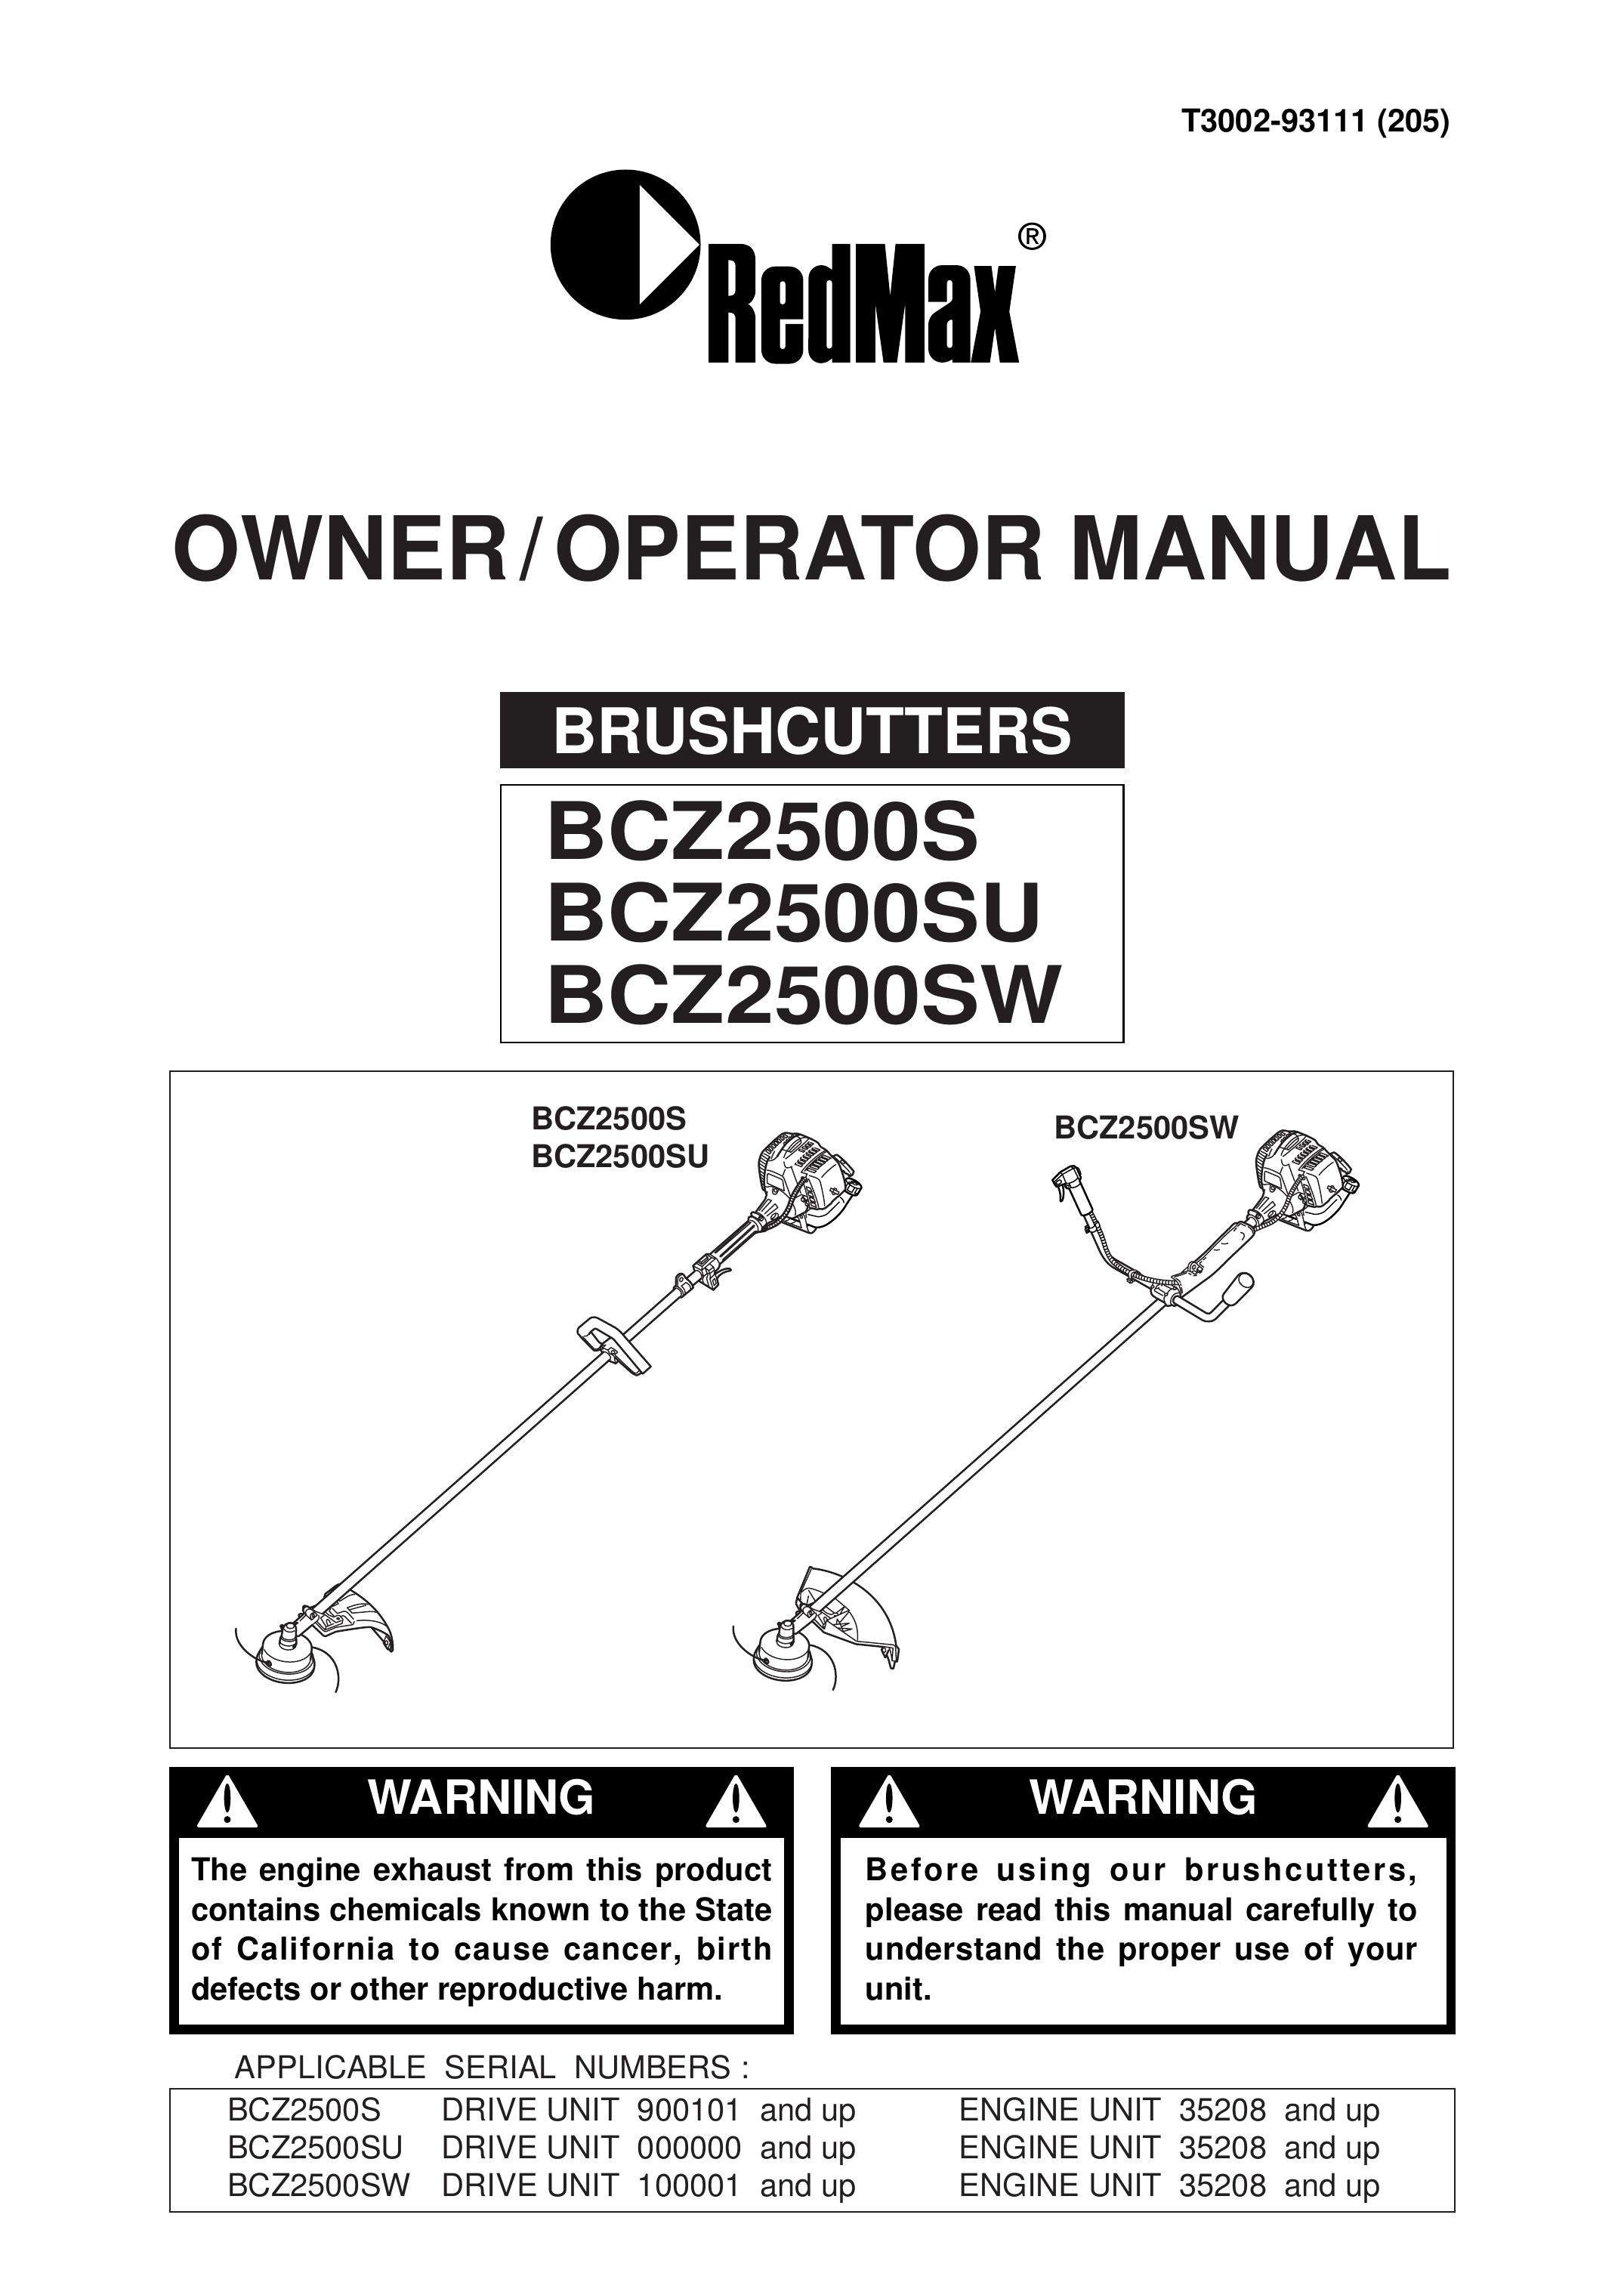 RedMax BCZ2500S Brush Cutter User Manual